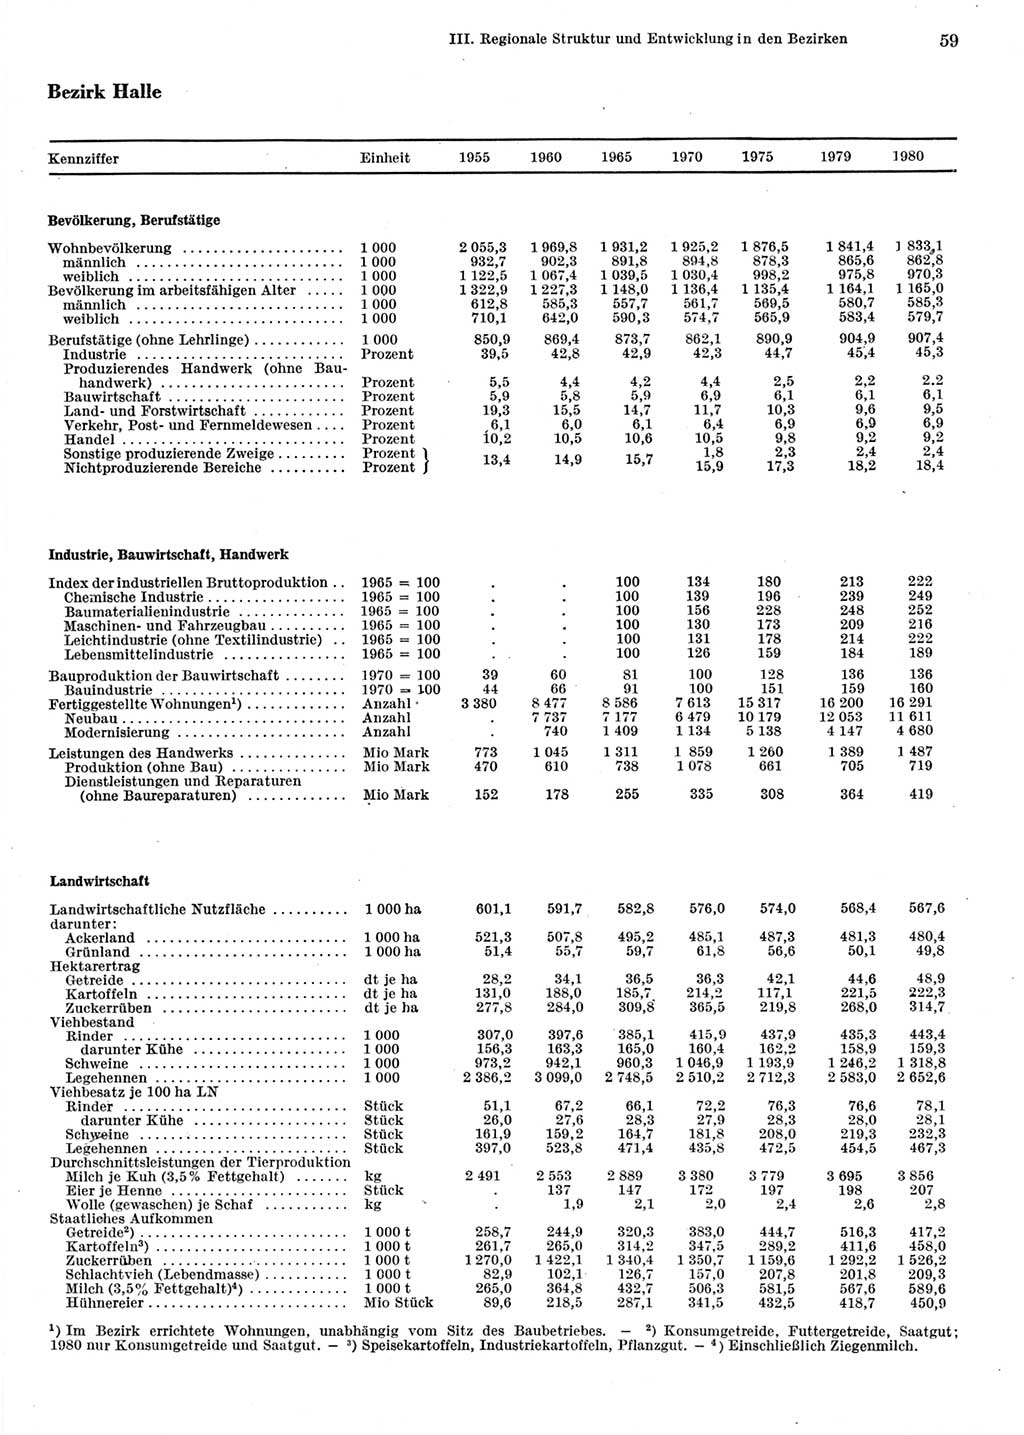 Statistisches Jahrbuch der Deutschen Demokratischen Republik (DDR) 1981, Seite 59 (Stat. Jb. DDR 1981, S. 59)